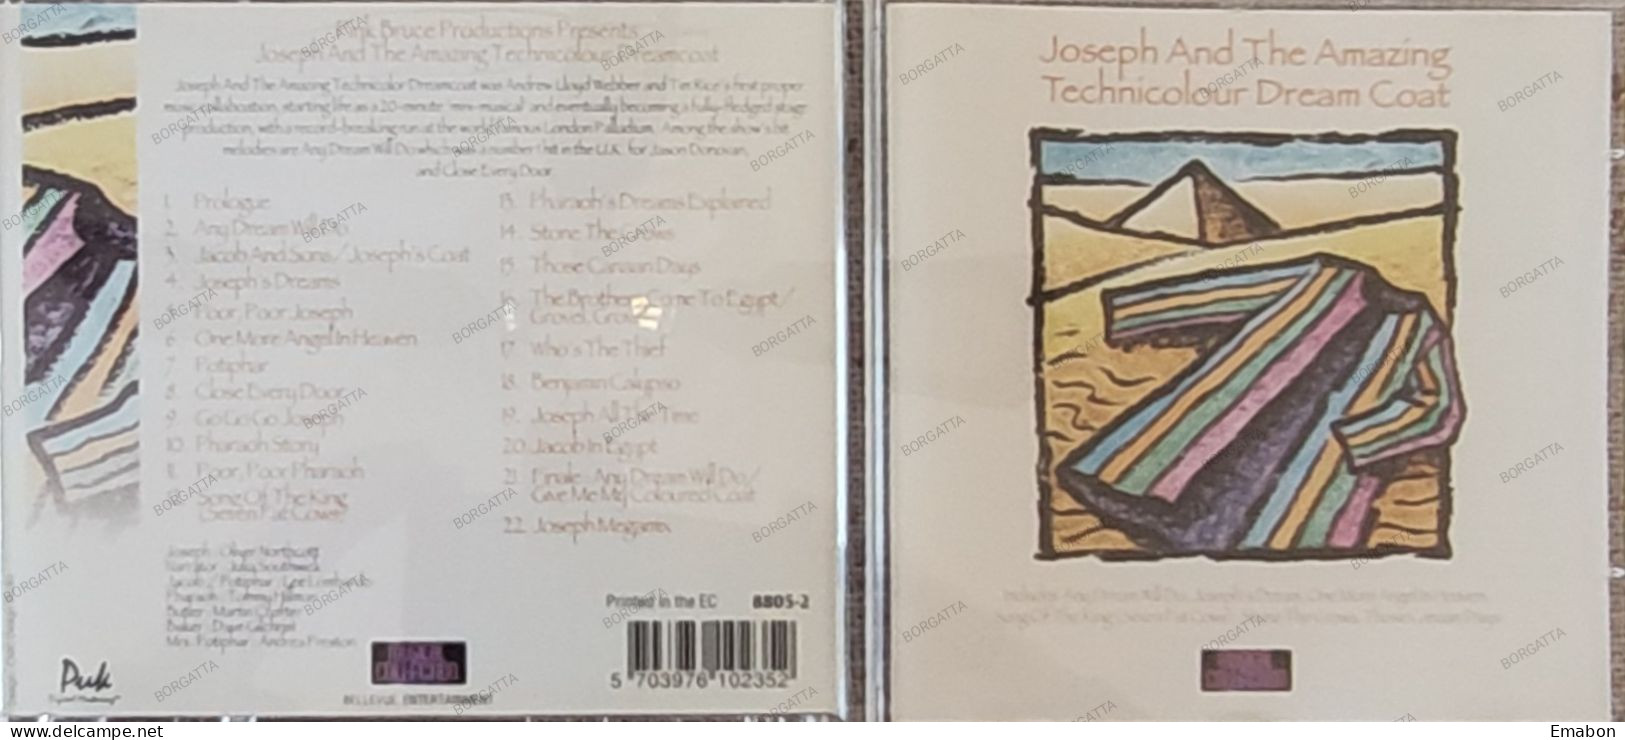 BORGATTA - FILM MUSIC - Cd JOSEPH AND THE AMAZING TECHNICOLOR DREAMCOAT - BELLEVUE 1996 - USATO In Buono Stato - Filmmusik